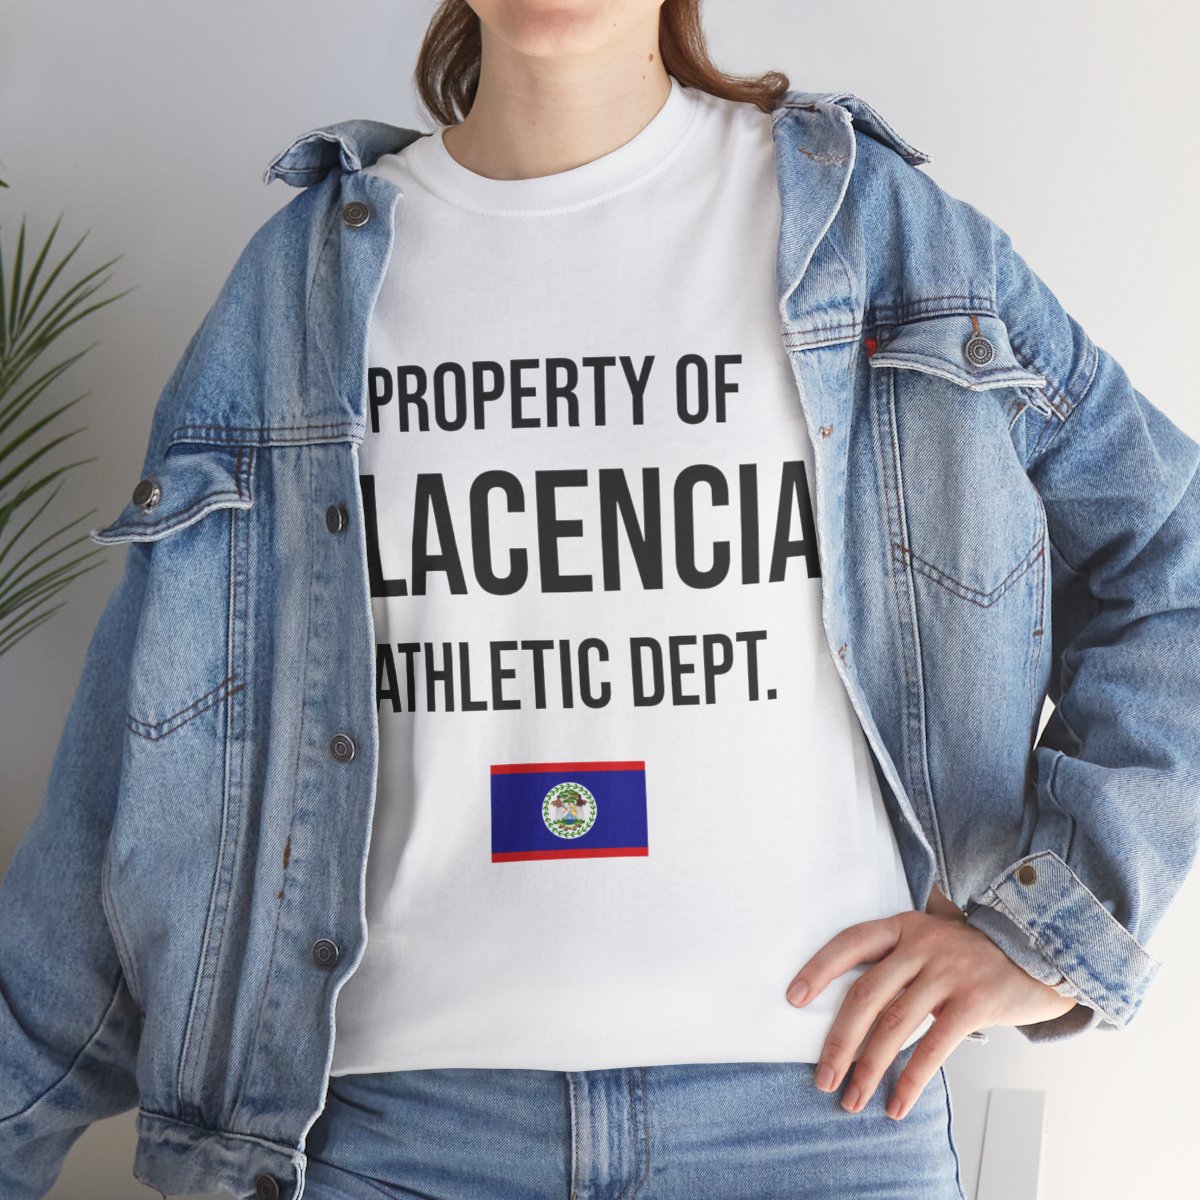 Placencia Athletic Dept. Unisex Tshirt product thumbnail image